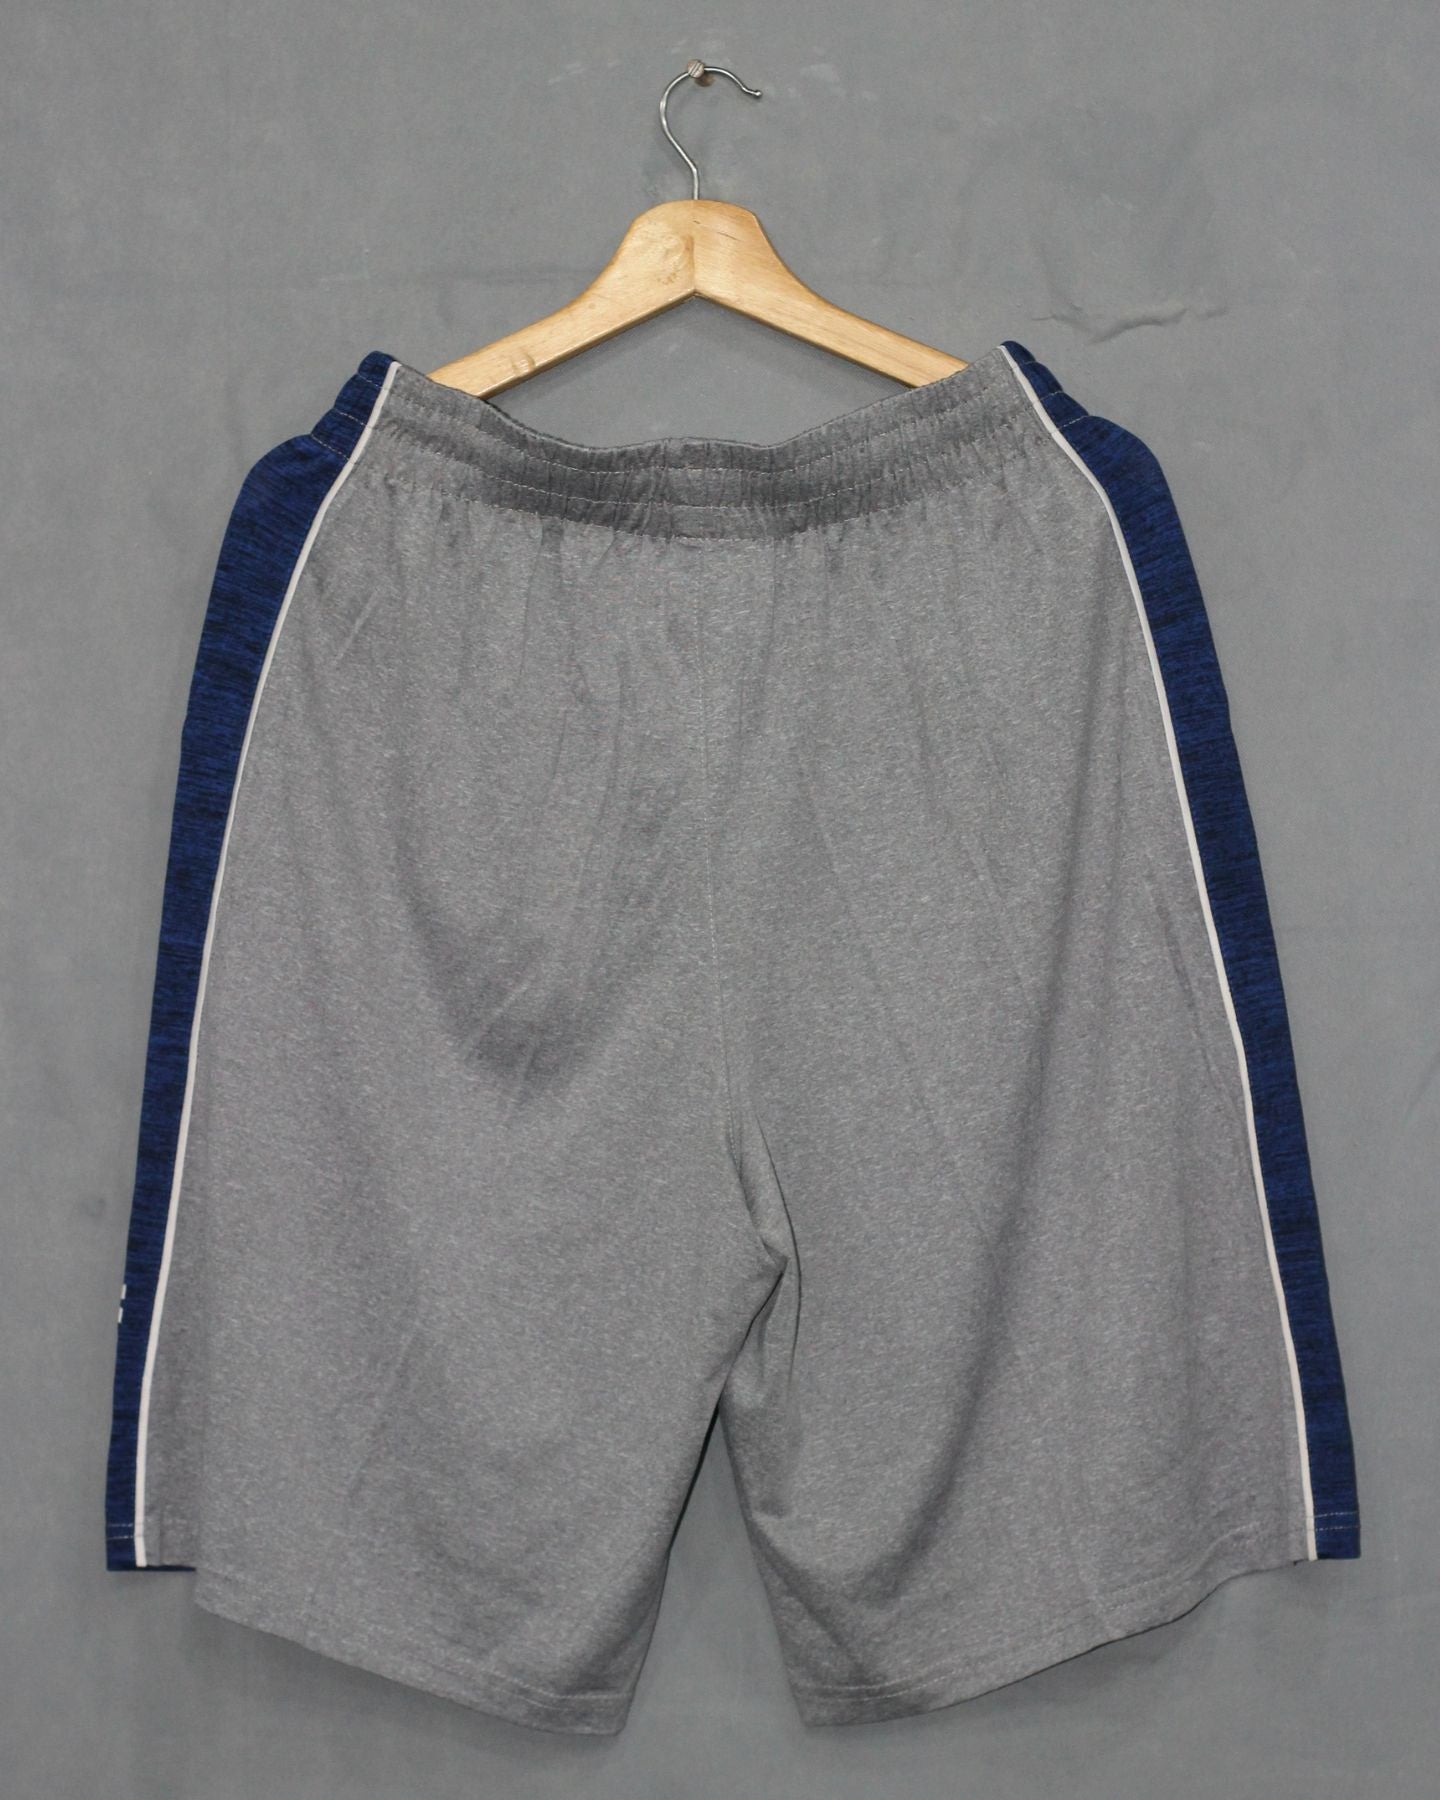 Adidas NBA Branded Original Sports Soccer Short For Men